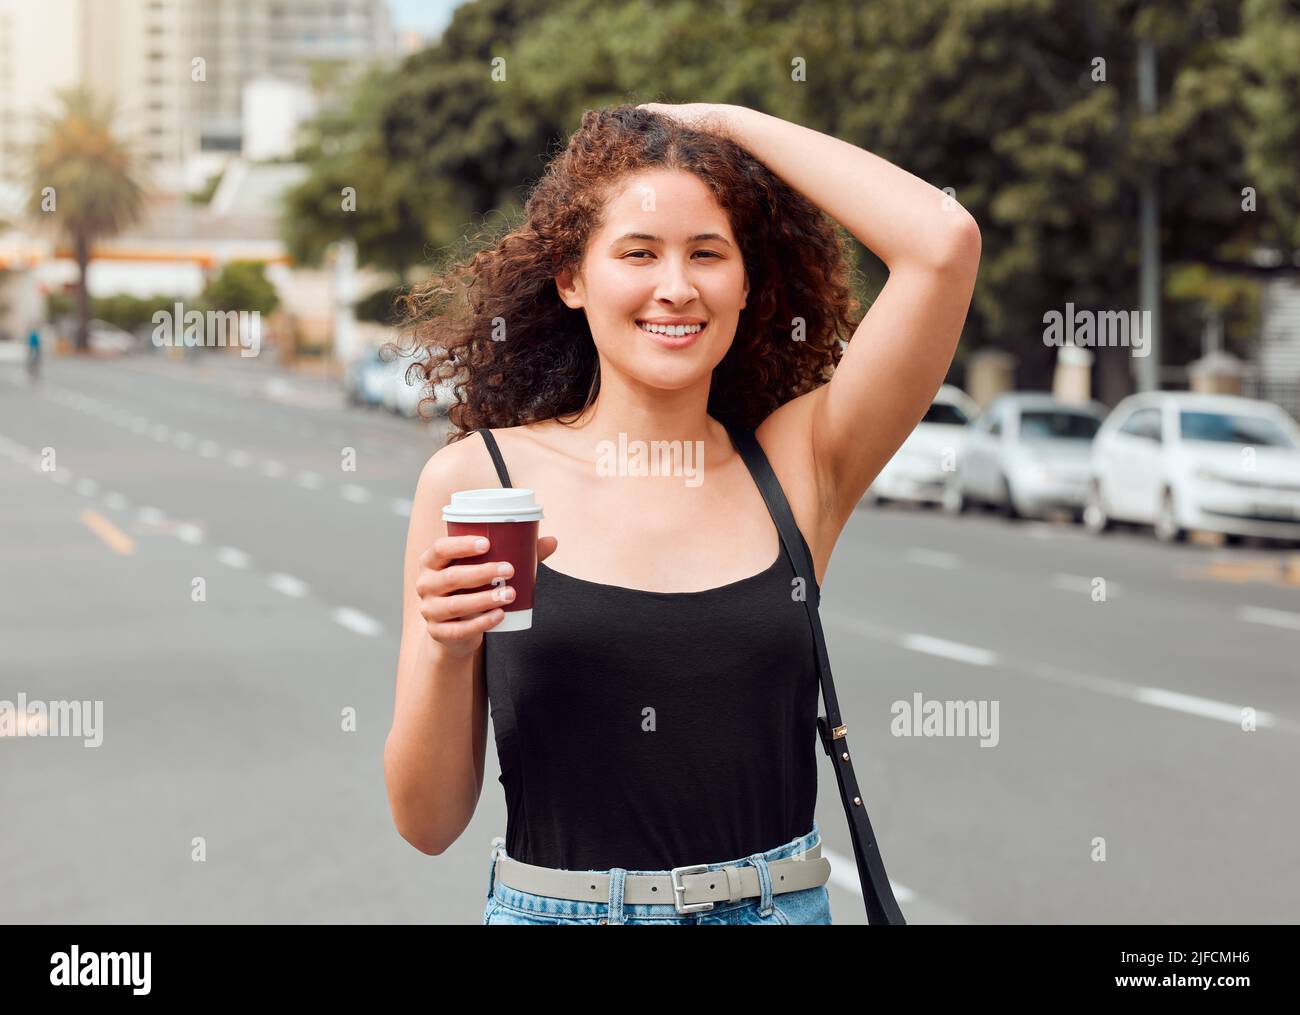 Porträt einer glücklichen, schönen jungen Frau mit gemischter Rasse, die die Stadt erkundet, während sie einen Kaffee zum Mitnehmen hält und ihr lockiges, brüniertes Haar berührt. Hispanisch Stockfoto